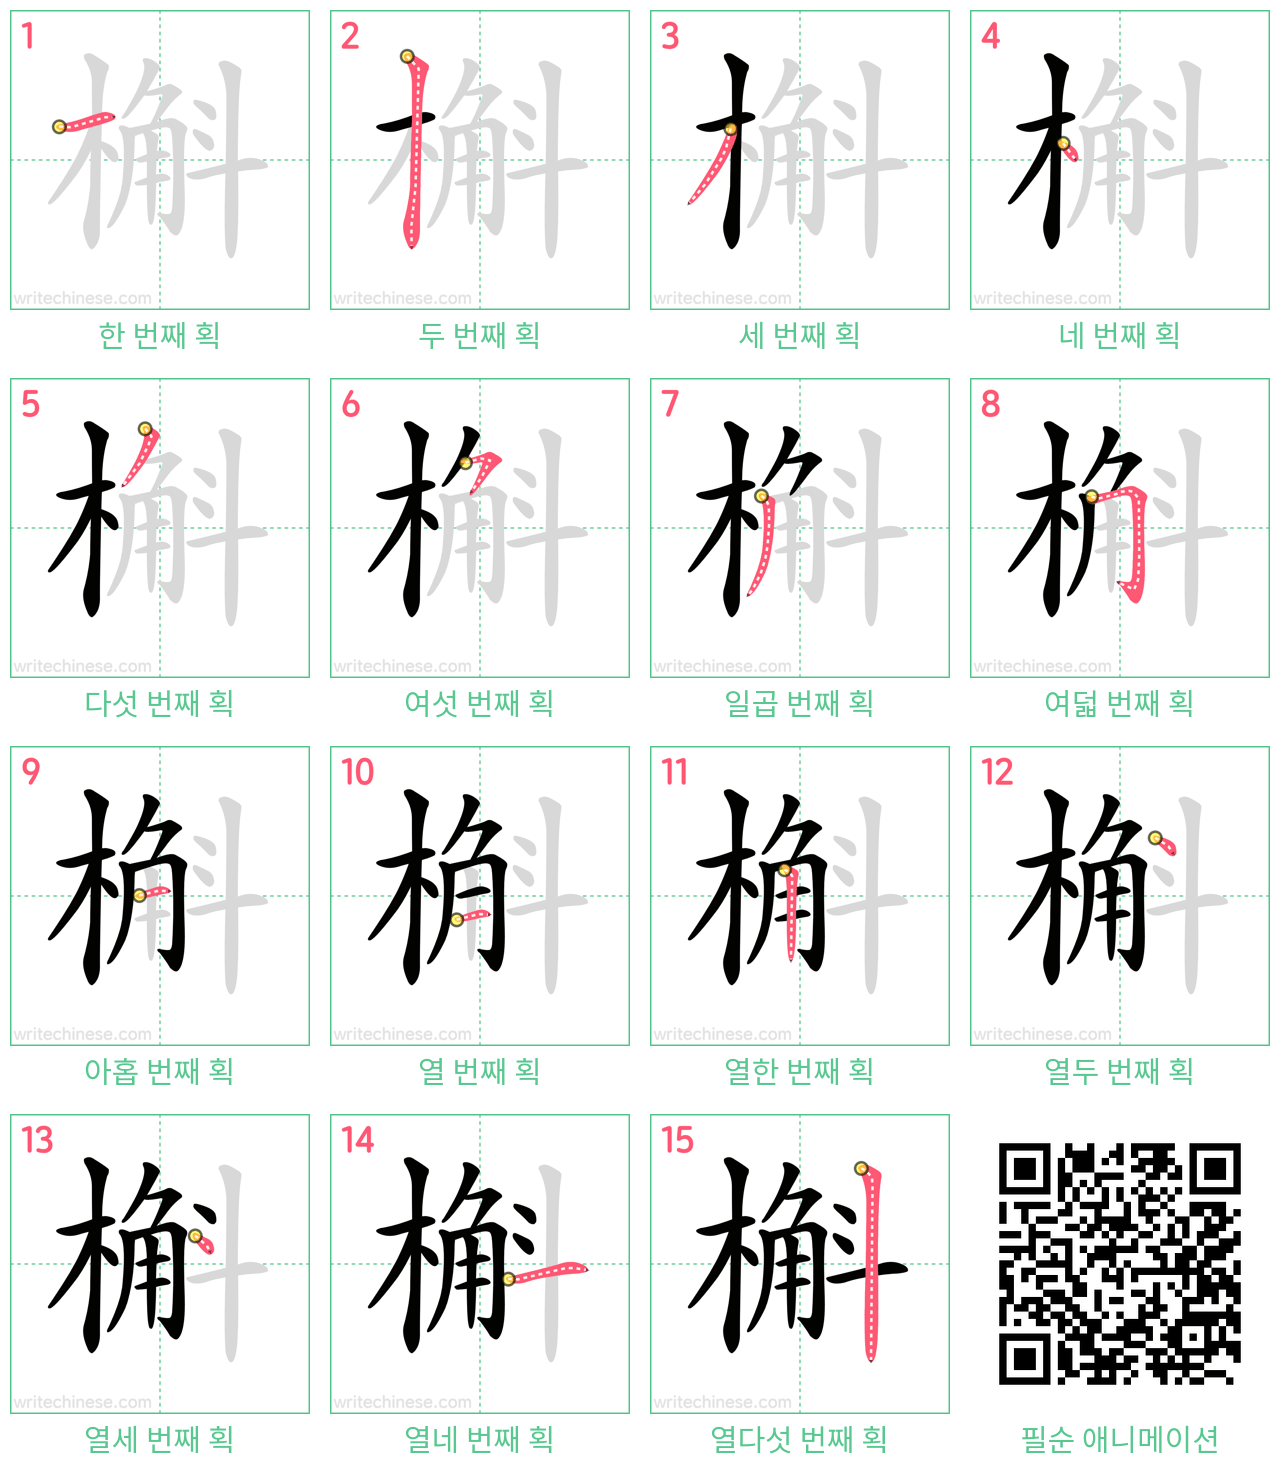 槲 step-by-step stroke order diagrams